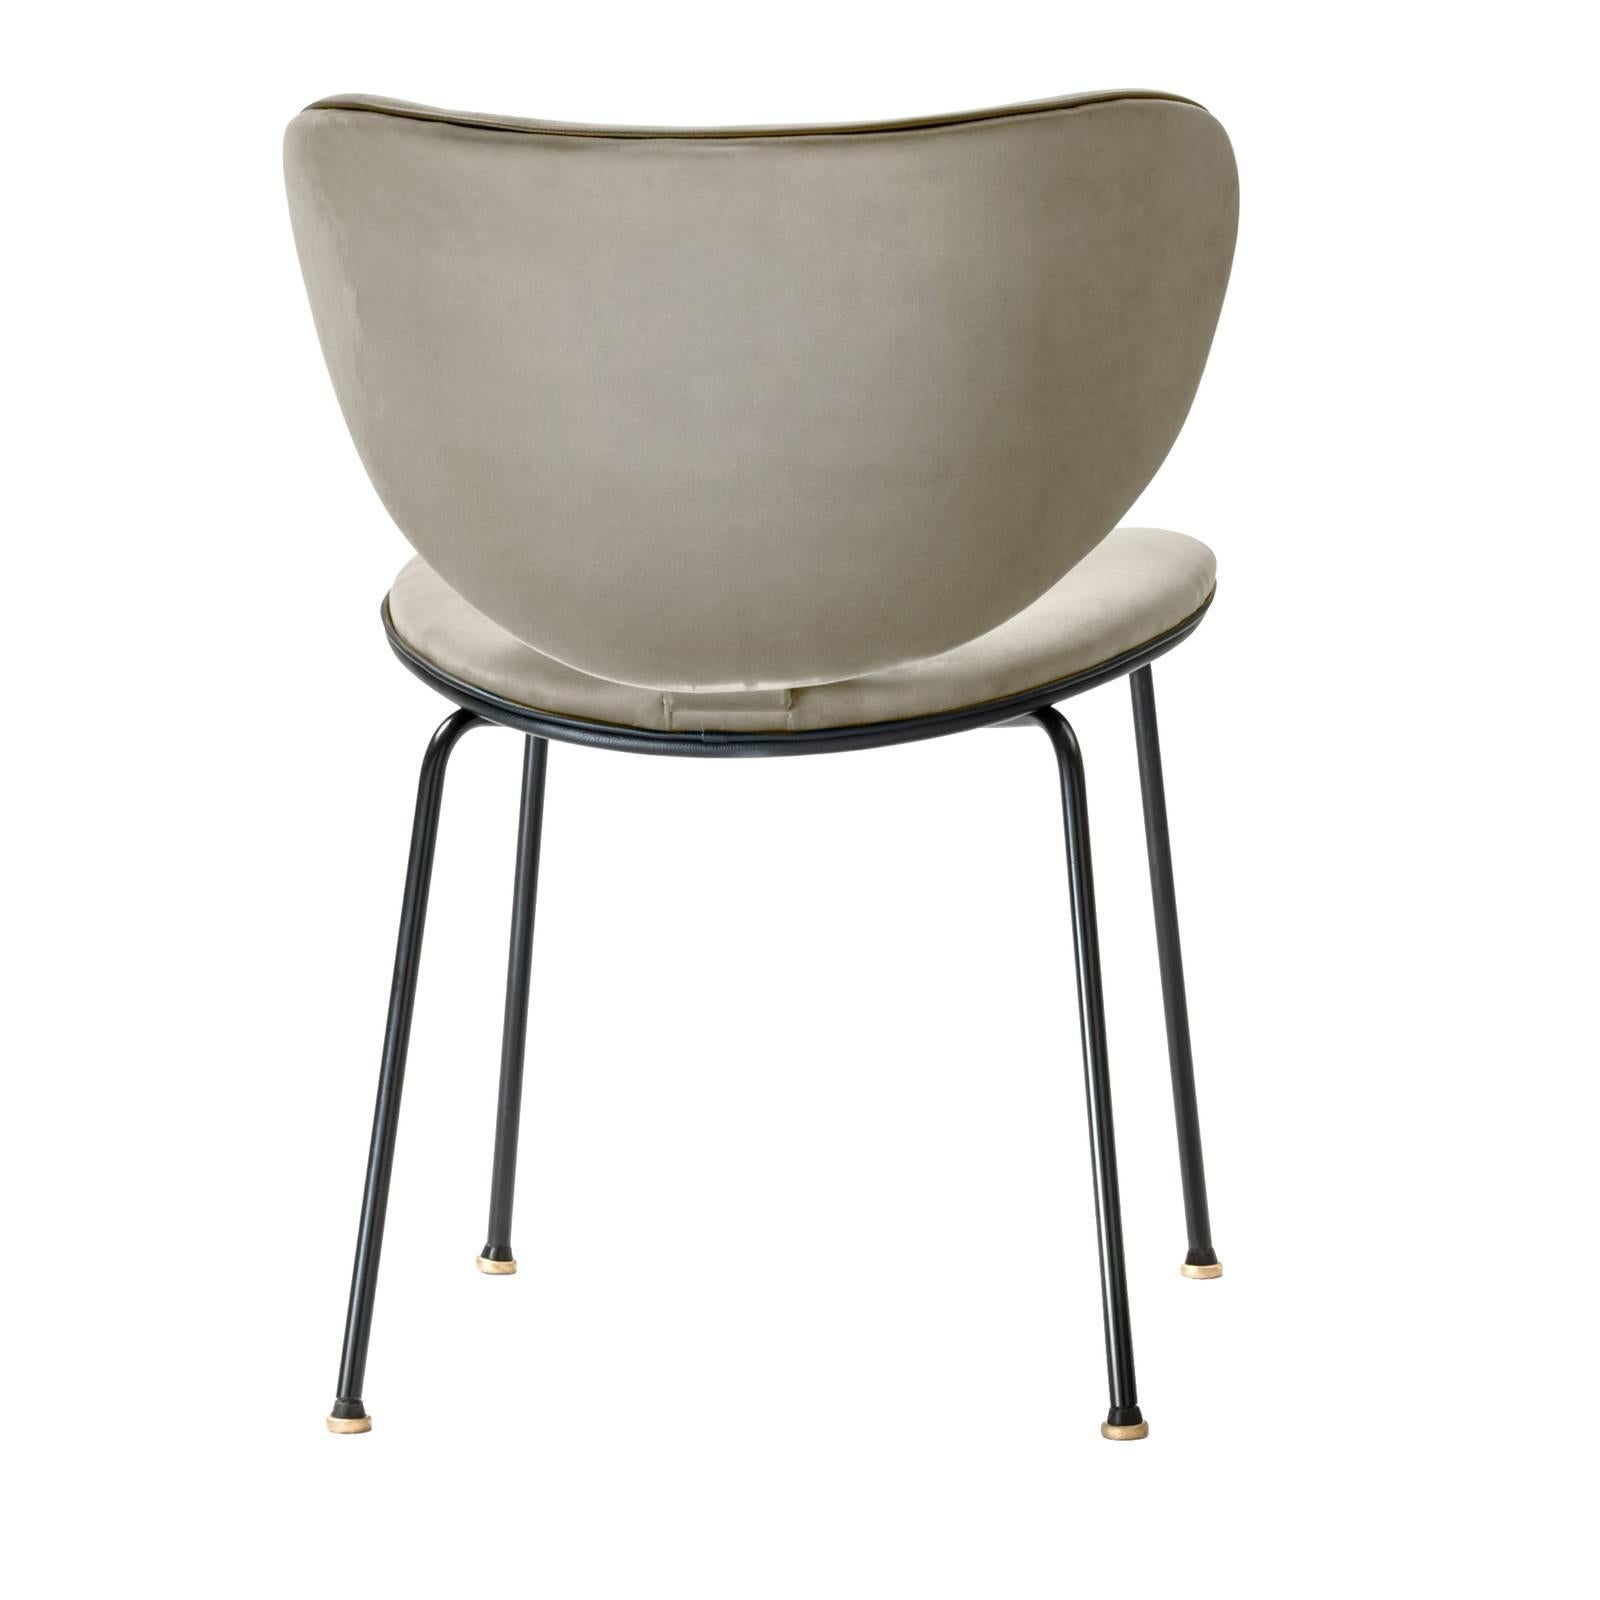 Dieser exklusive Stuhl vereint mit seinem minimalistischen Look und seinen linearen Formen funktionalen Stil und Komfort. Der Metallrahmen ist mattschwarz lackiert und trägt eine geschwungene Sitzfläche und Rückenlehne aus Buchenholz mit einer